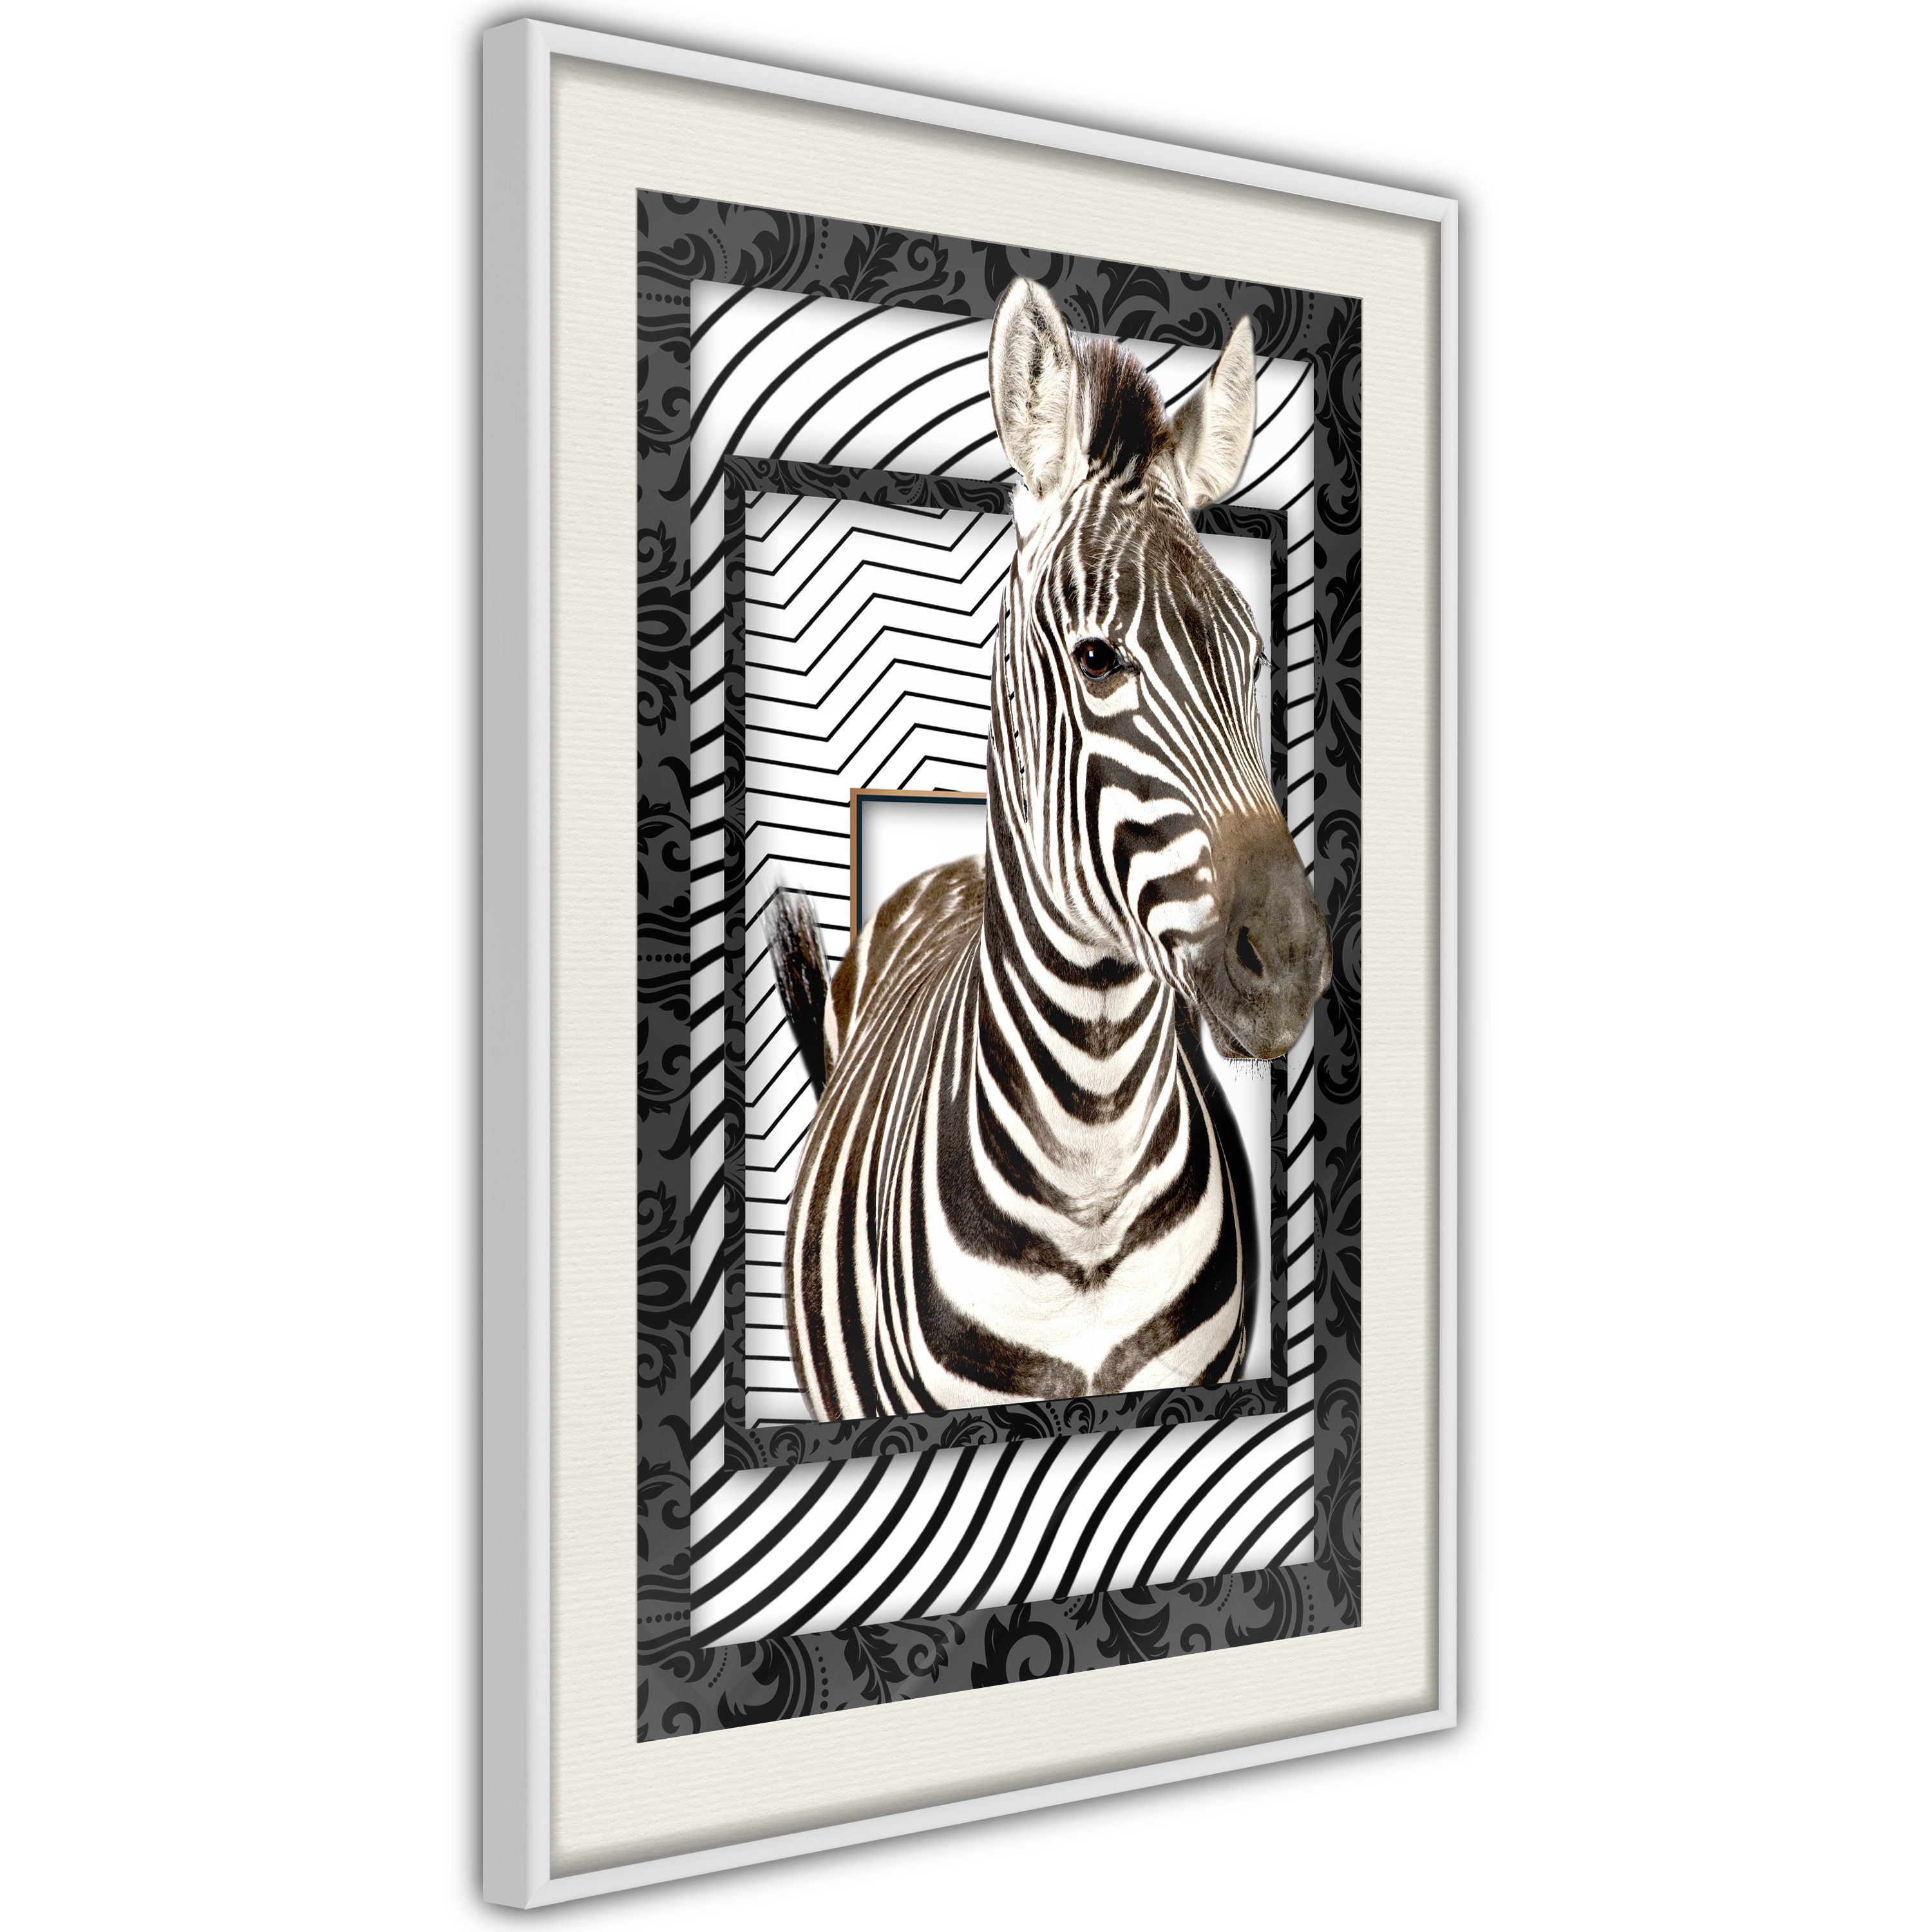 Poster - Zebra in the Frame - 20x30